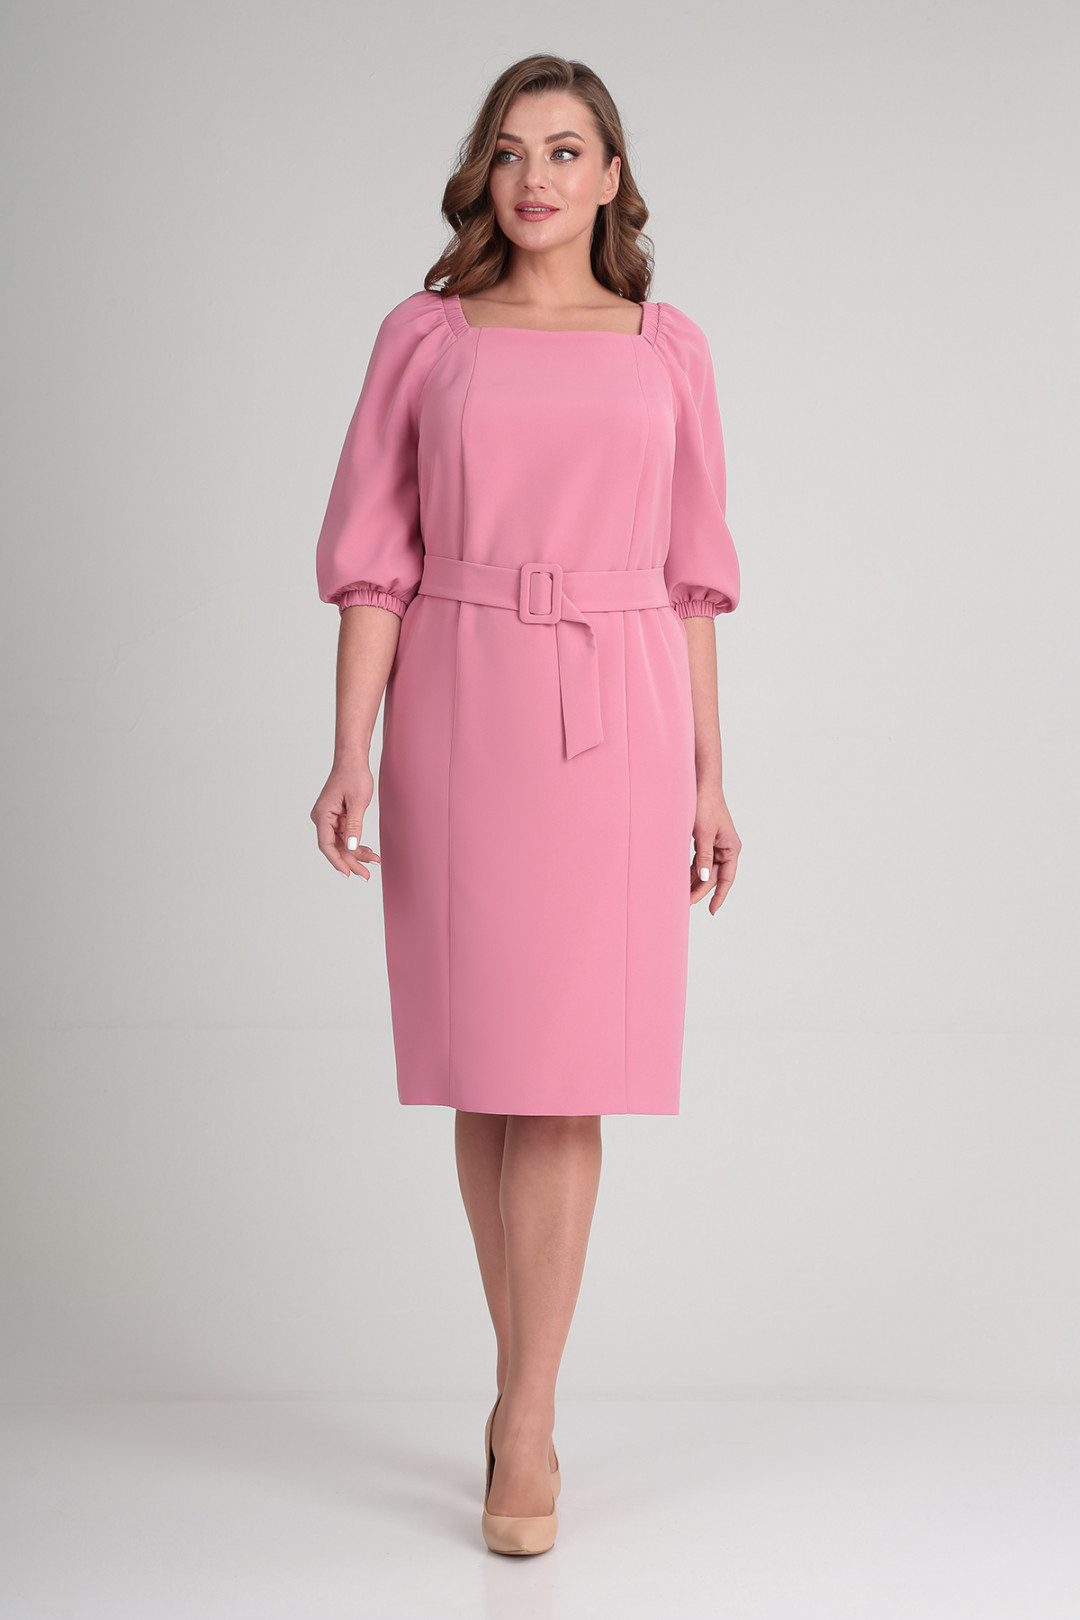 Платье Elga 01-735 розовая пудра